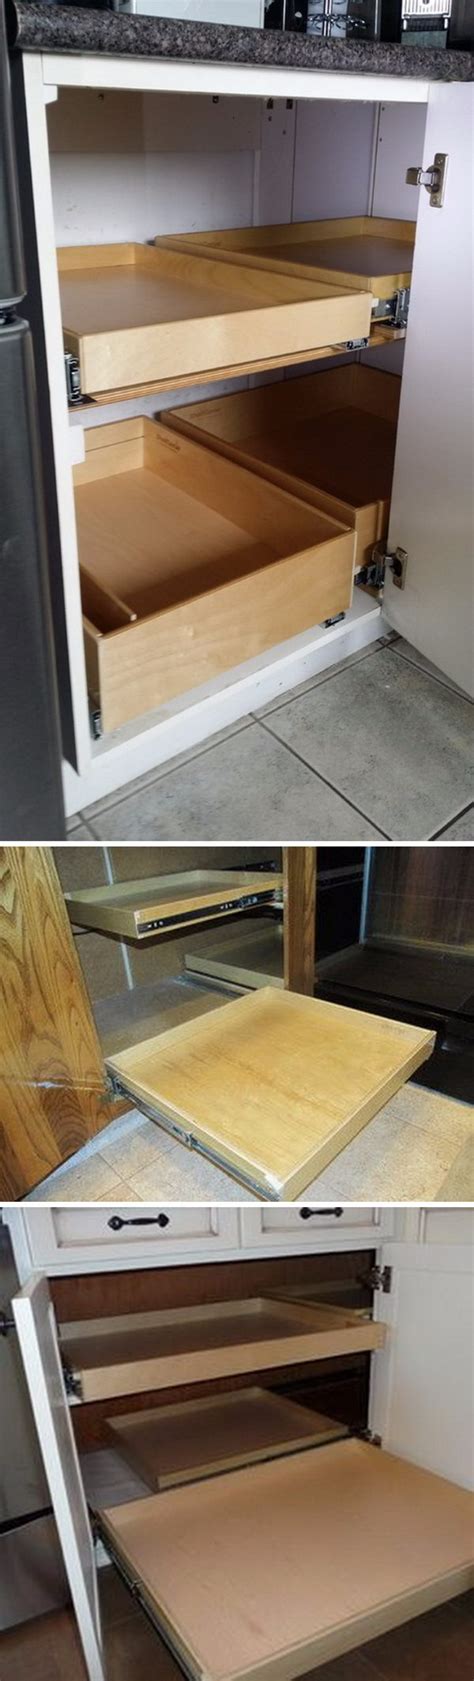 Custom kitchen cabinets also come in wood grains. Kitchen Corner Cabinet Storage Ideas 2017